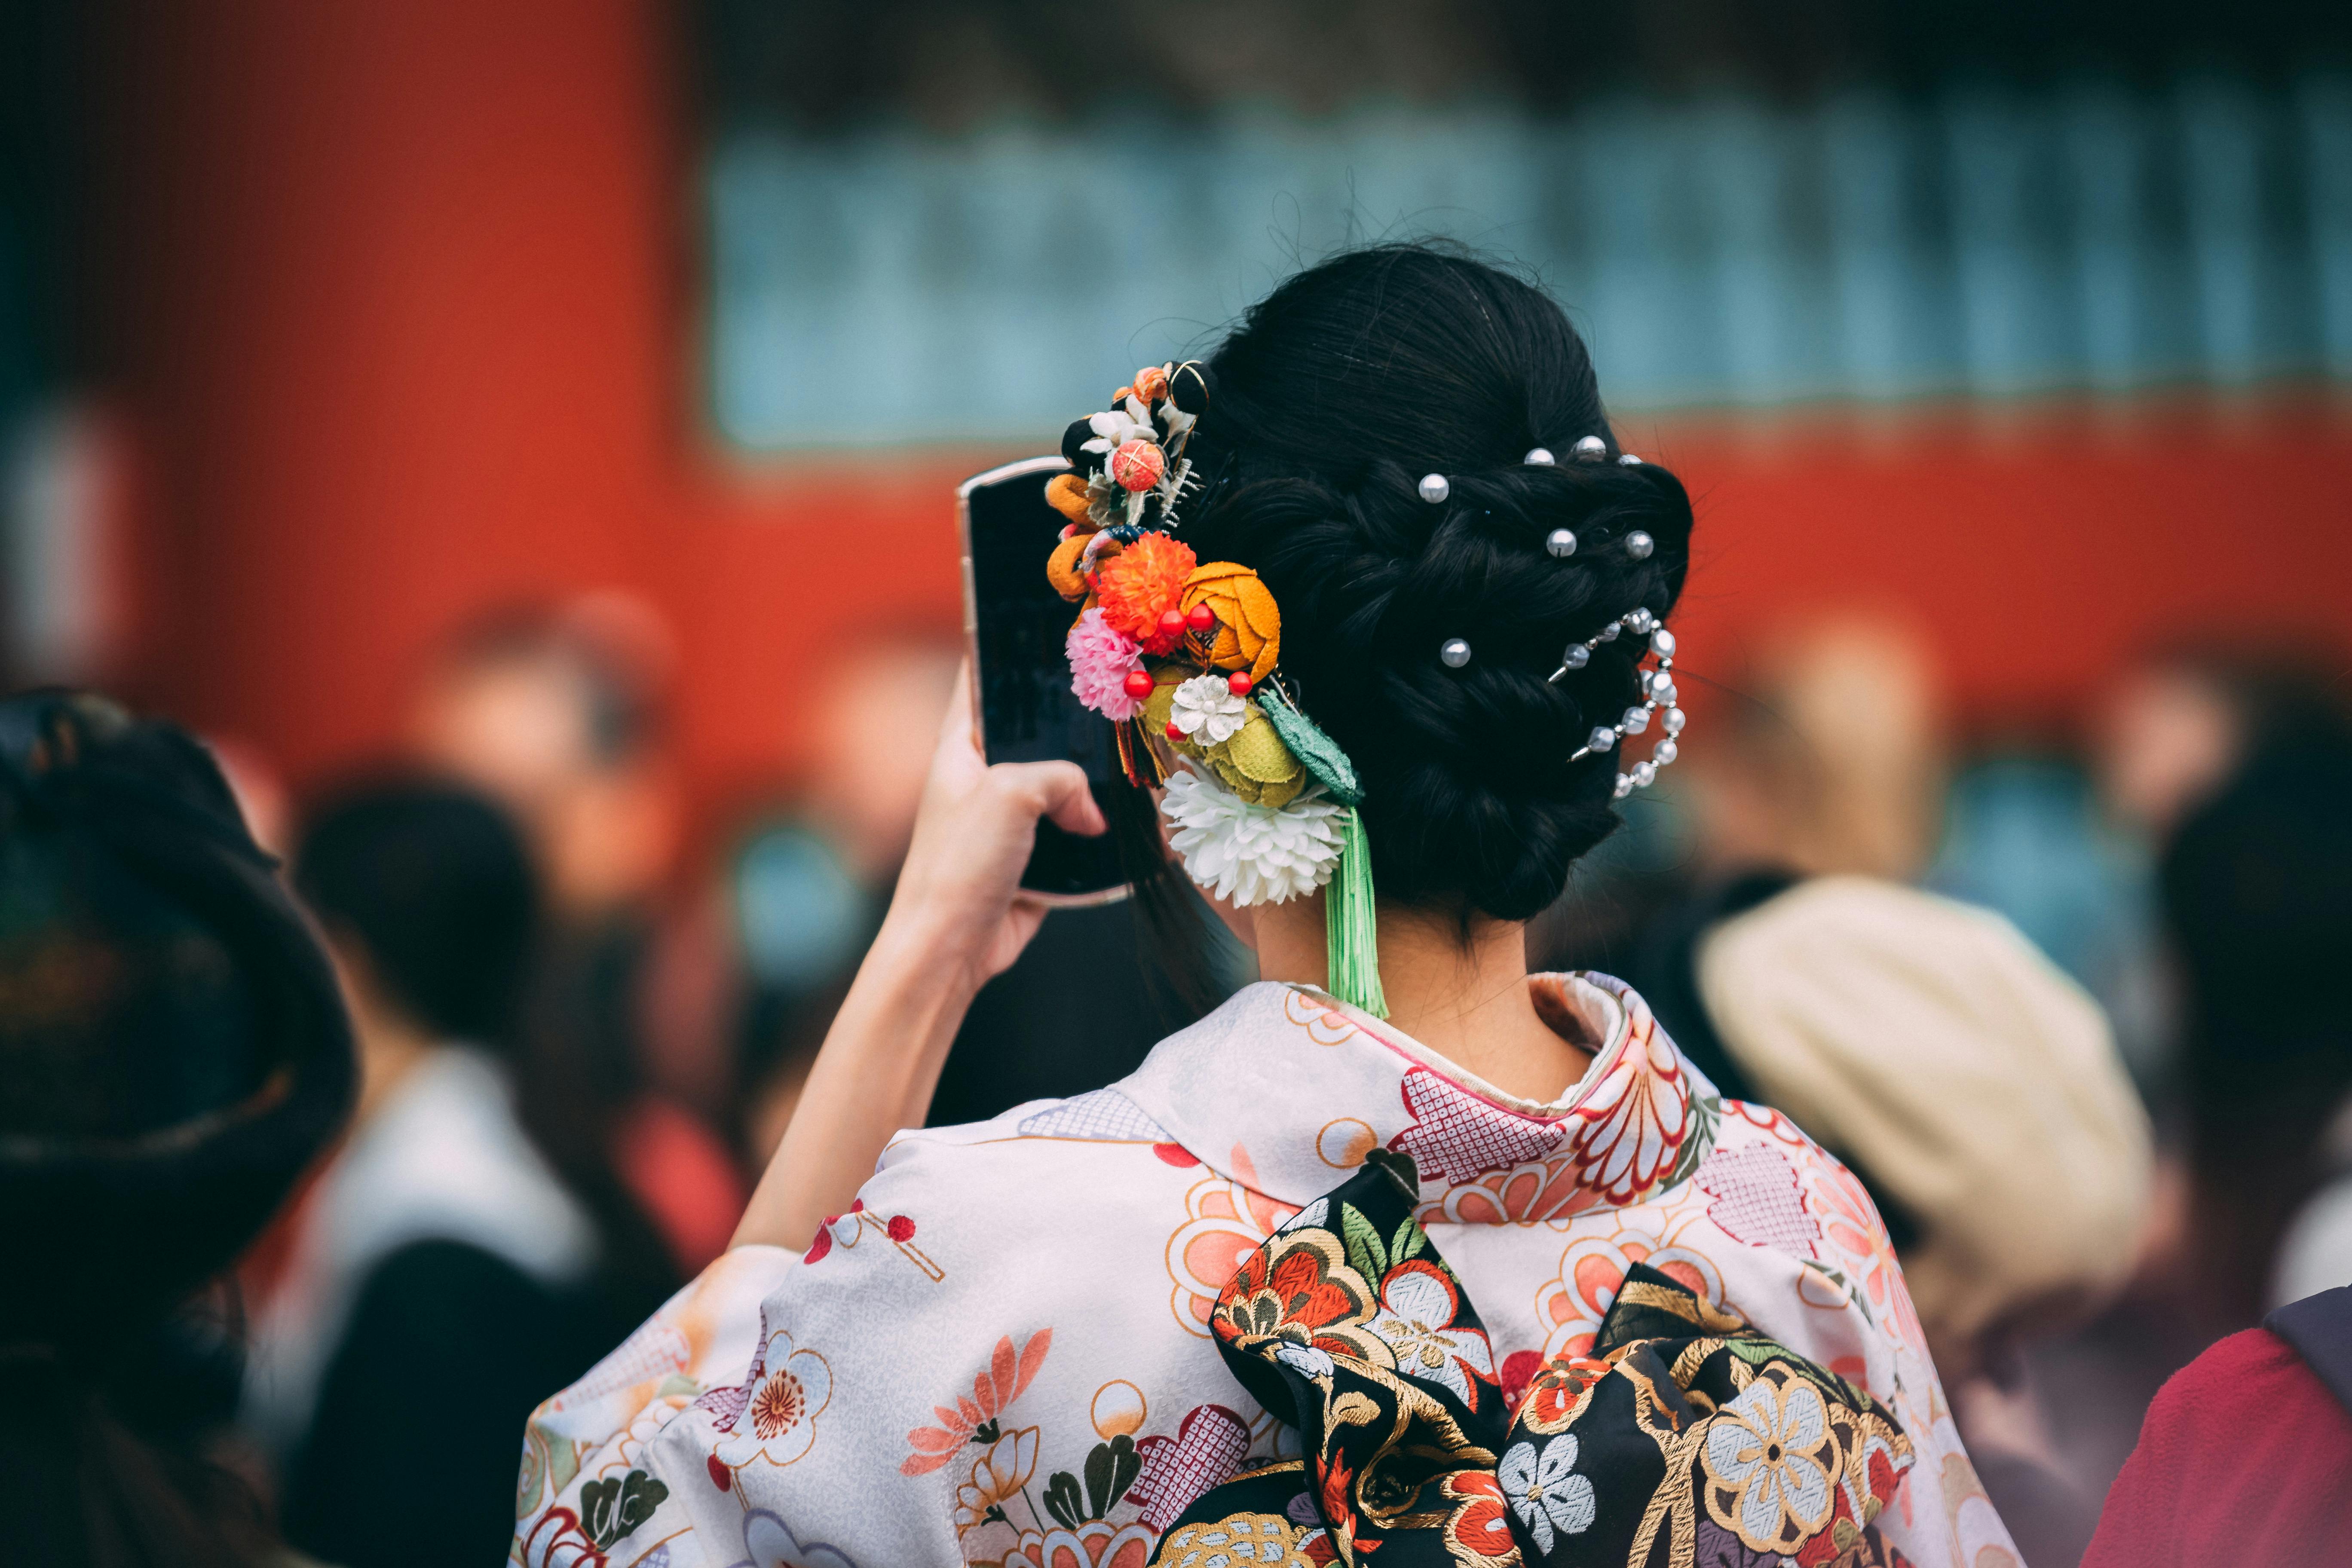 Fotos gratis : mujer, flor, primavera, ropa, kimono, festival, tradicion,  disfraz, geisha, K, Uno hecho a mano 4928x3264 - - 1393049 - Imagenes  gratis - PxHere